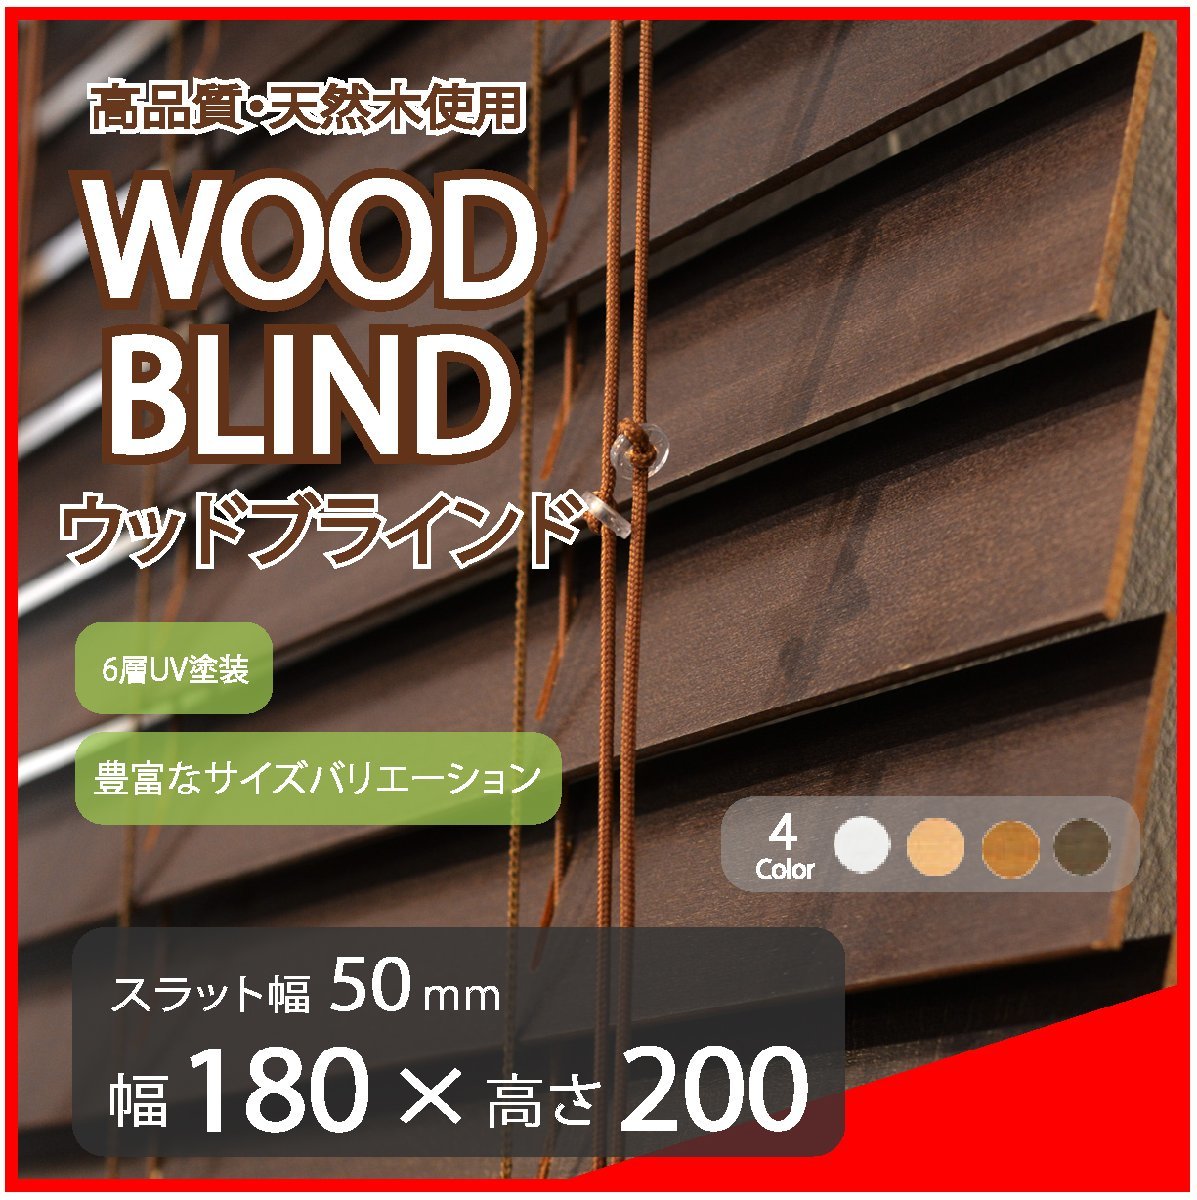 高品質 ウッドブラインド 木製 ブラインド 既成サイズ スラット(羽根)幅50mm 幅180cm×高さ200cm ダーク